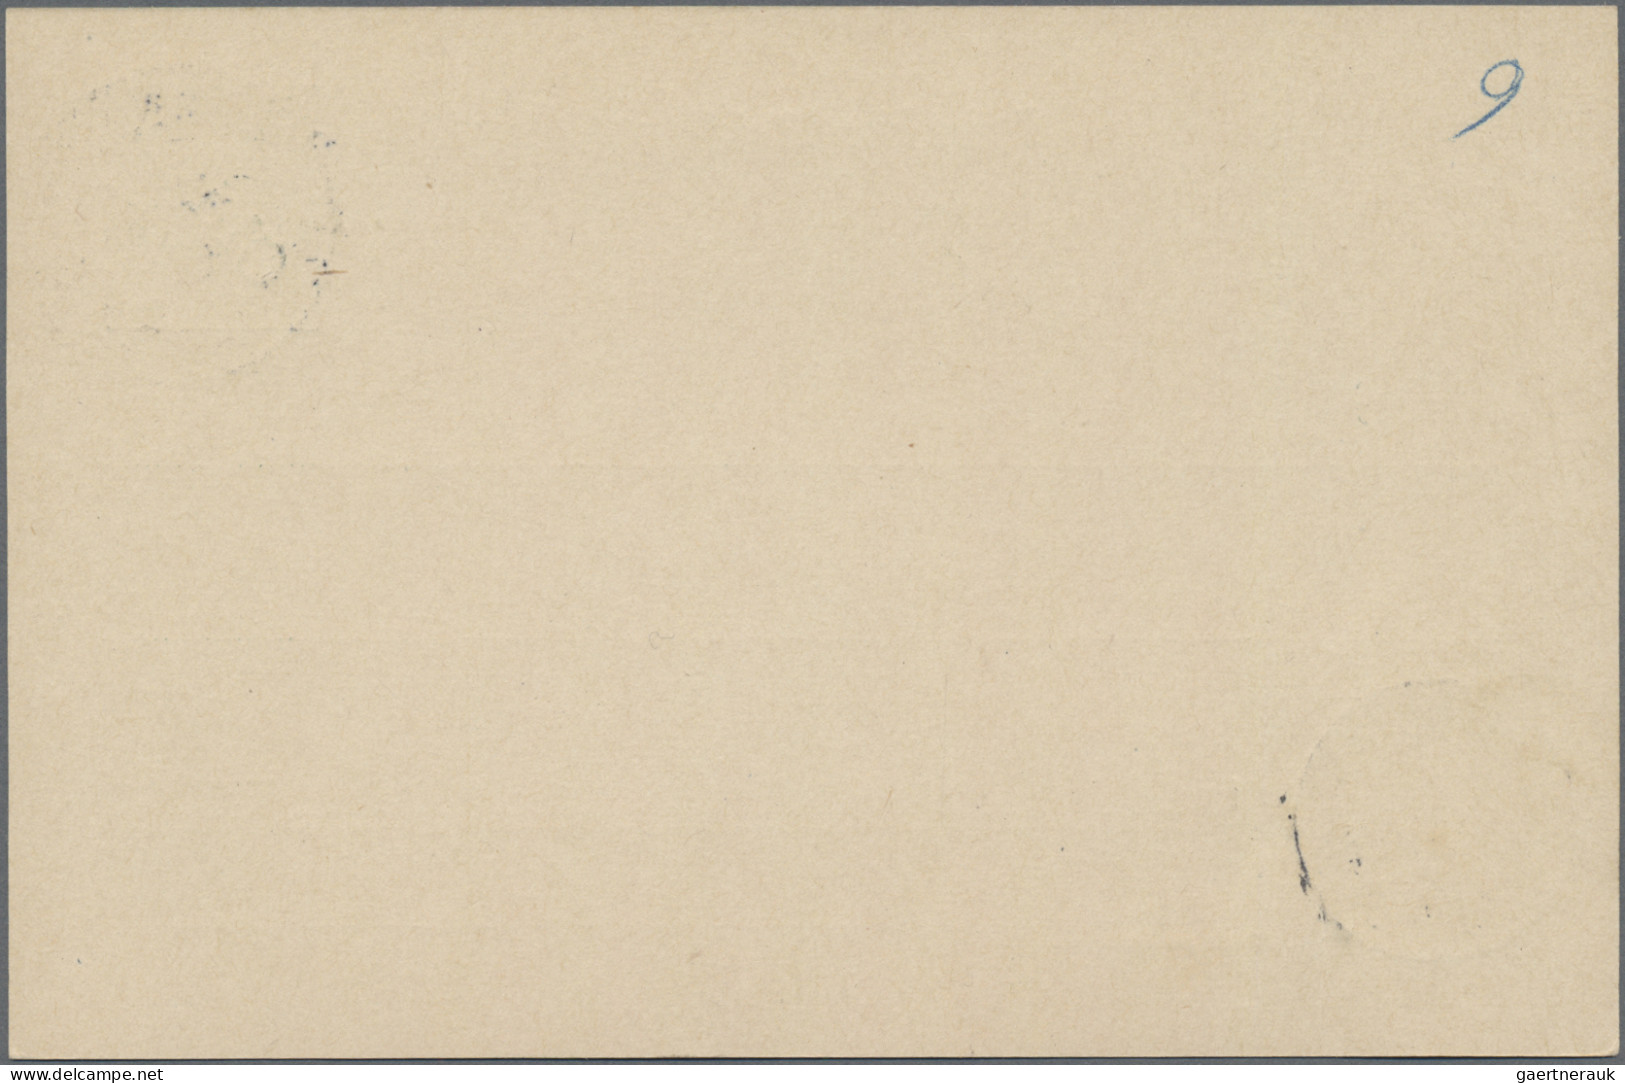 Deutsche Post in China - Ganzsachen: 1902, Vier Kab. Ganzsachenkarten 5 Pf. ab "